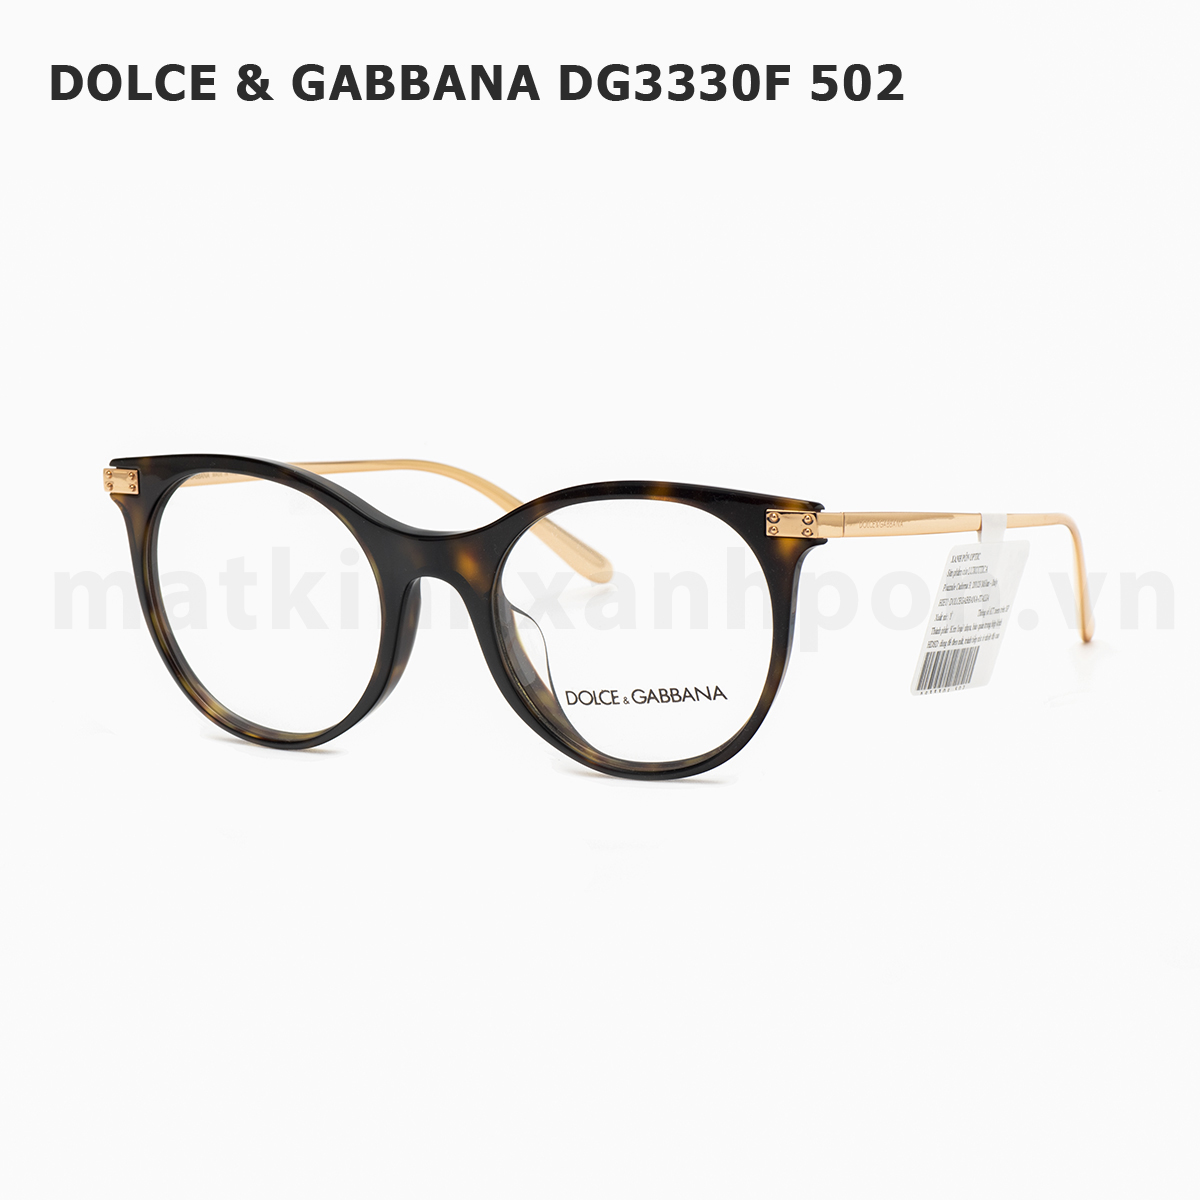 Dolce & Gabbana DG3330F 502